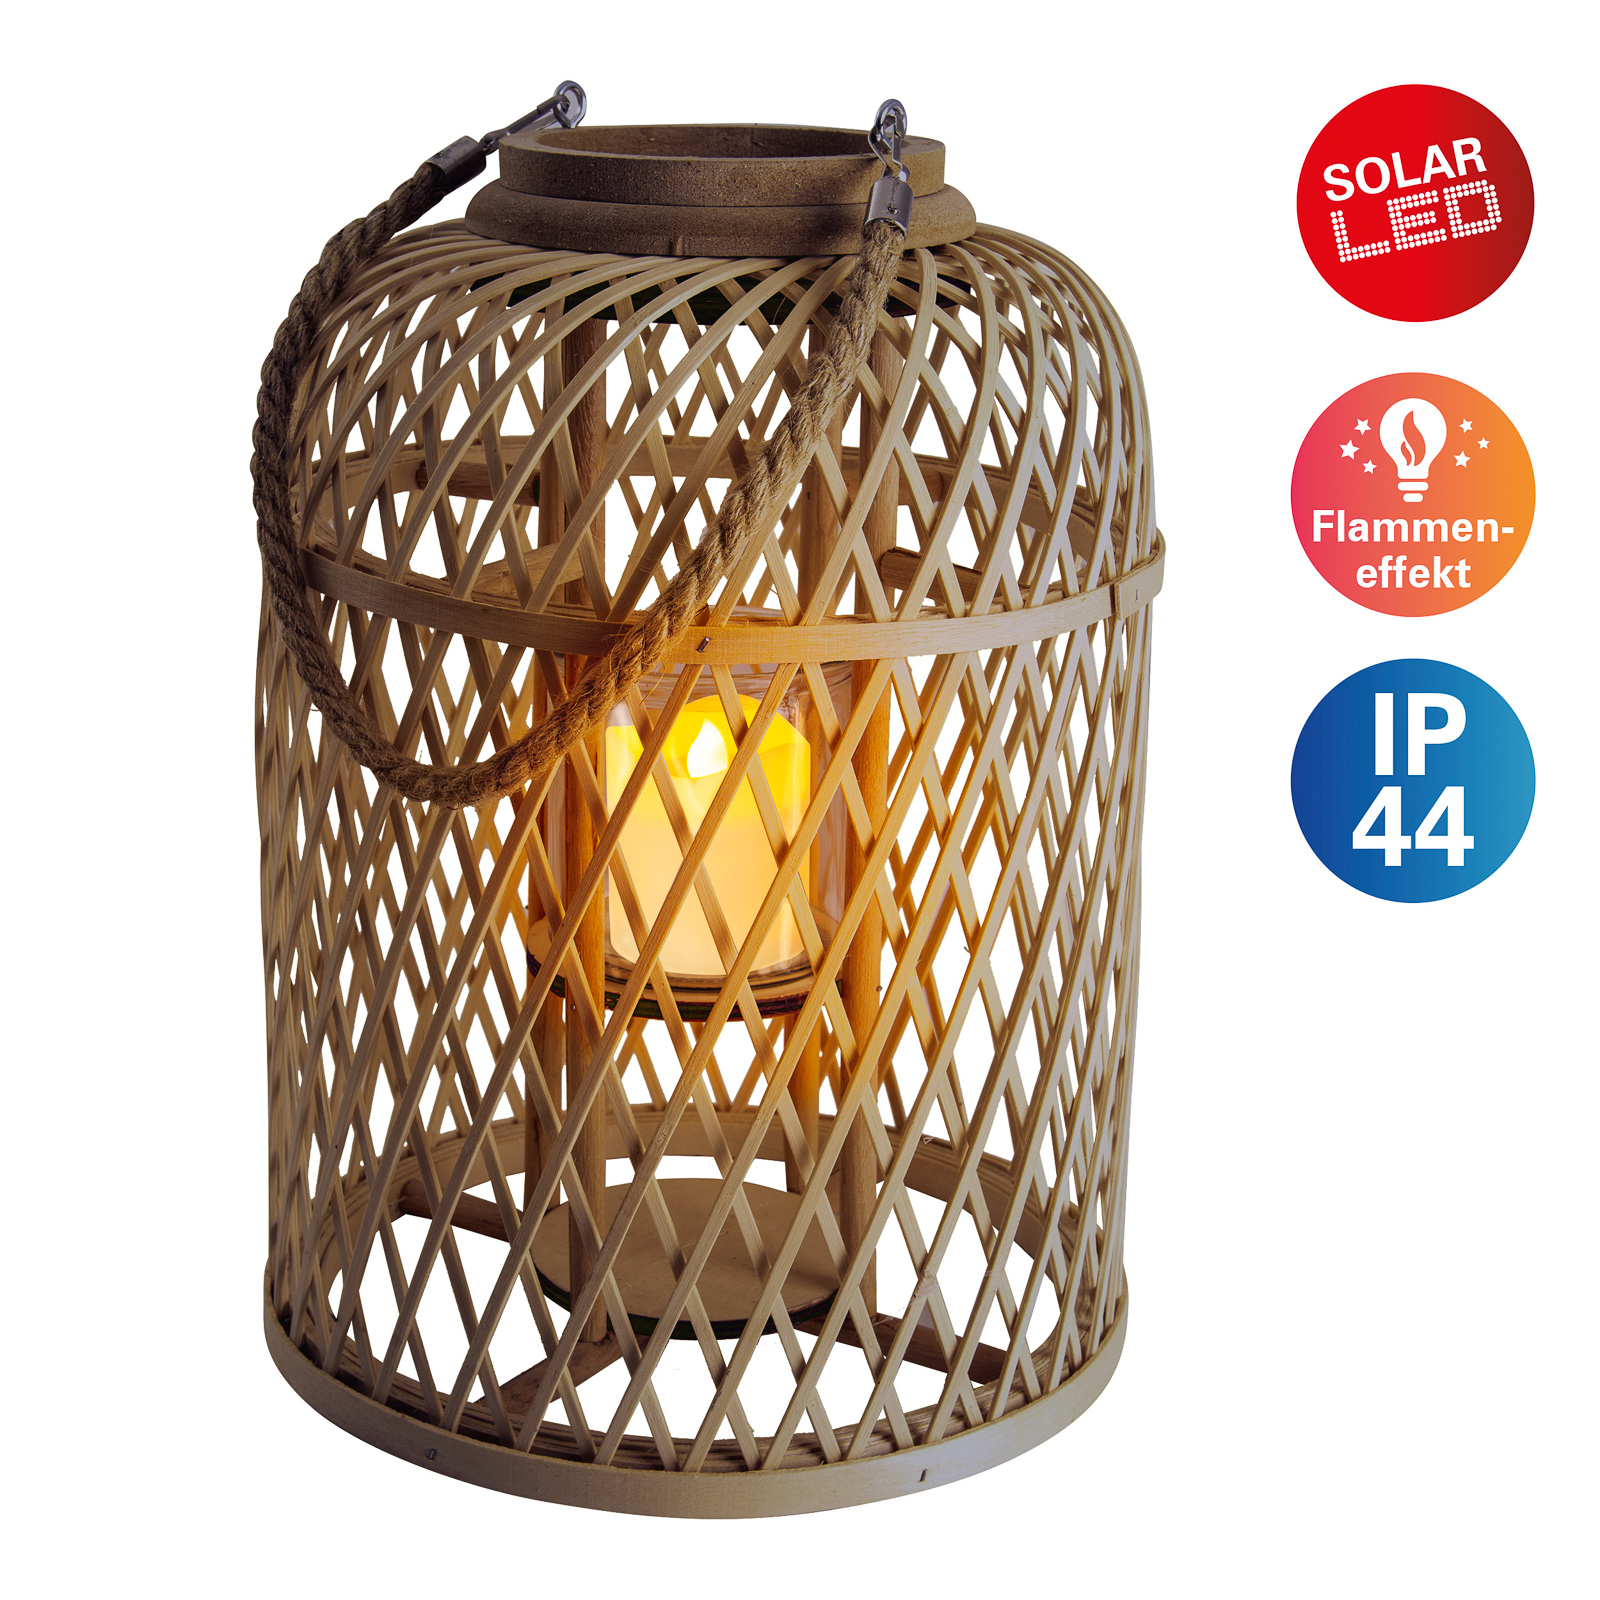 Basket LED solar lantern, bamboo, 38 cm, brown